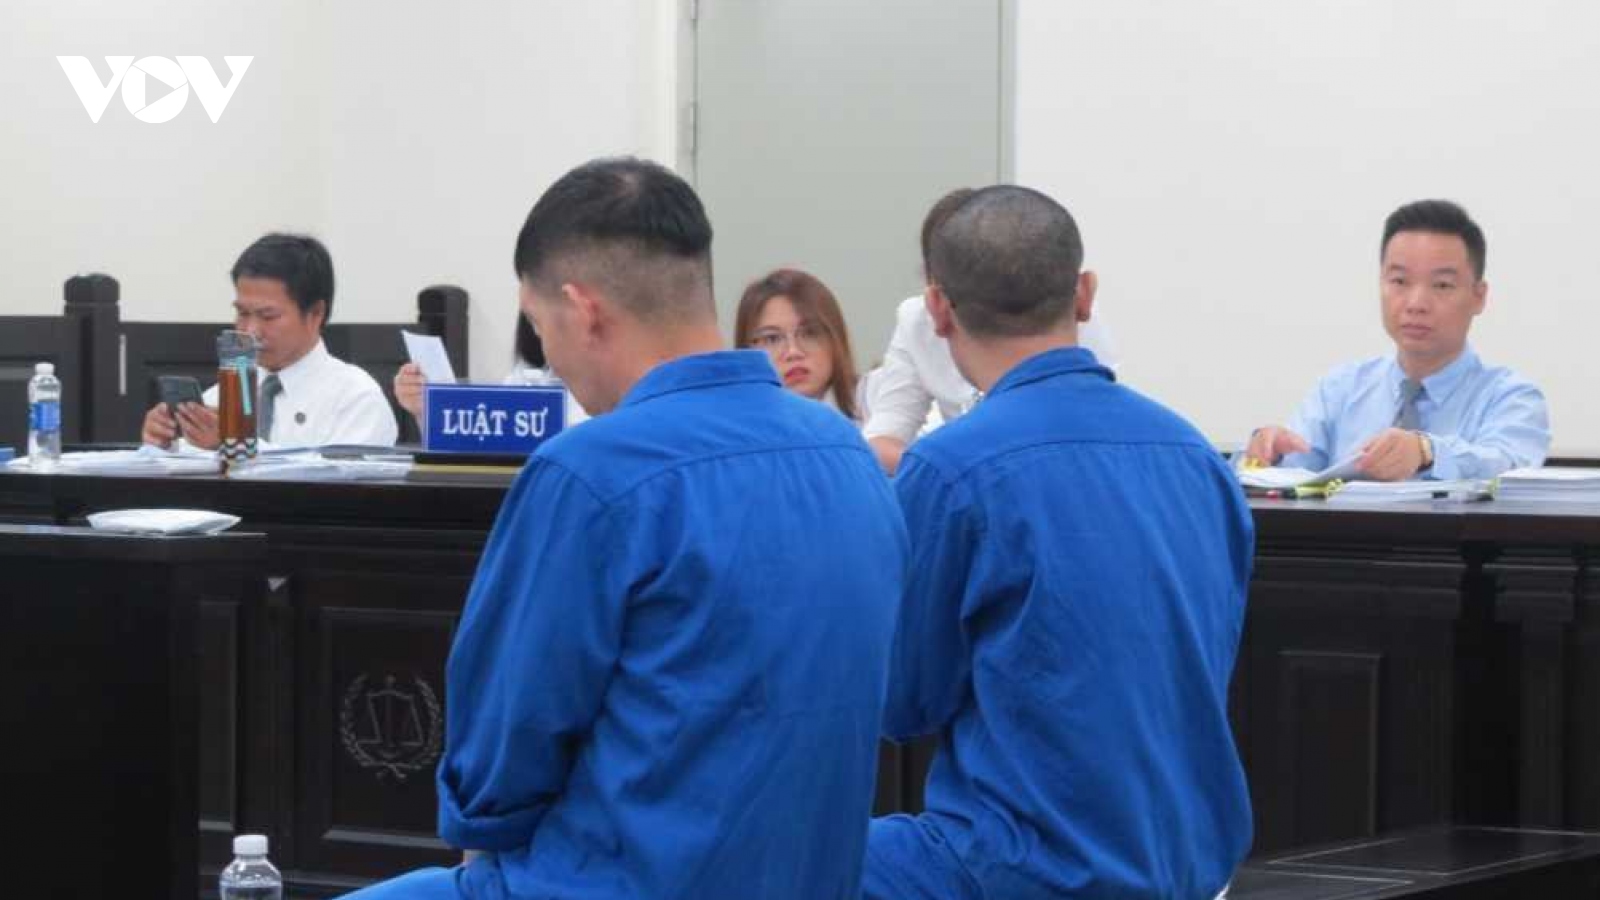 Ngày 19/1 xử phúc thẩm xem xét đơn kêu oan của luật sư Nguyễn Quang Trung